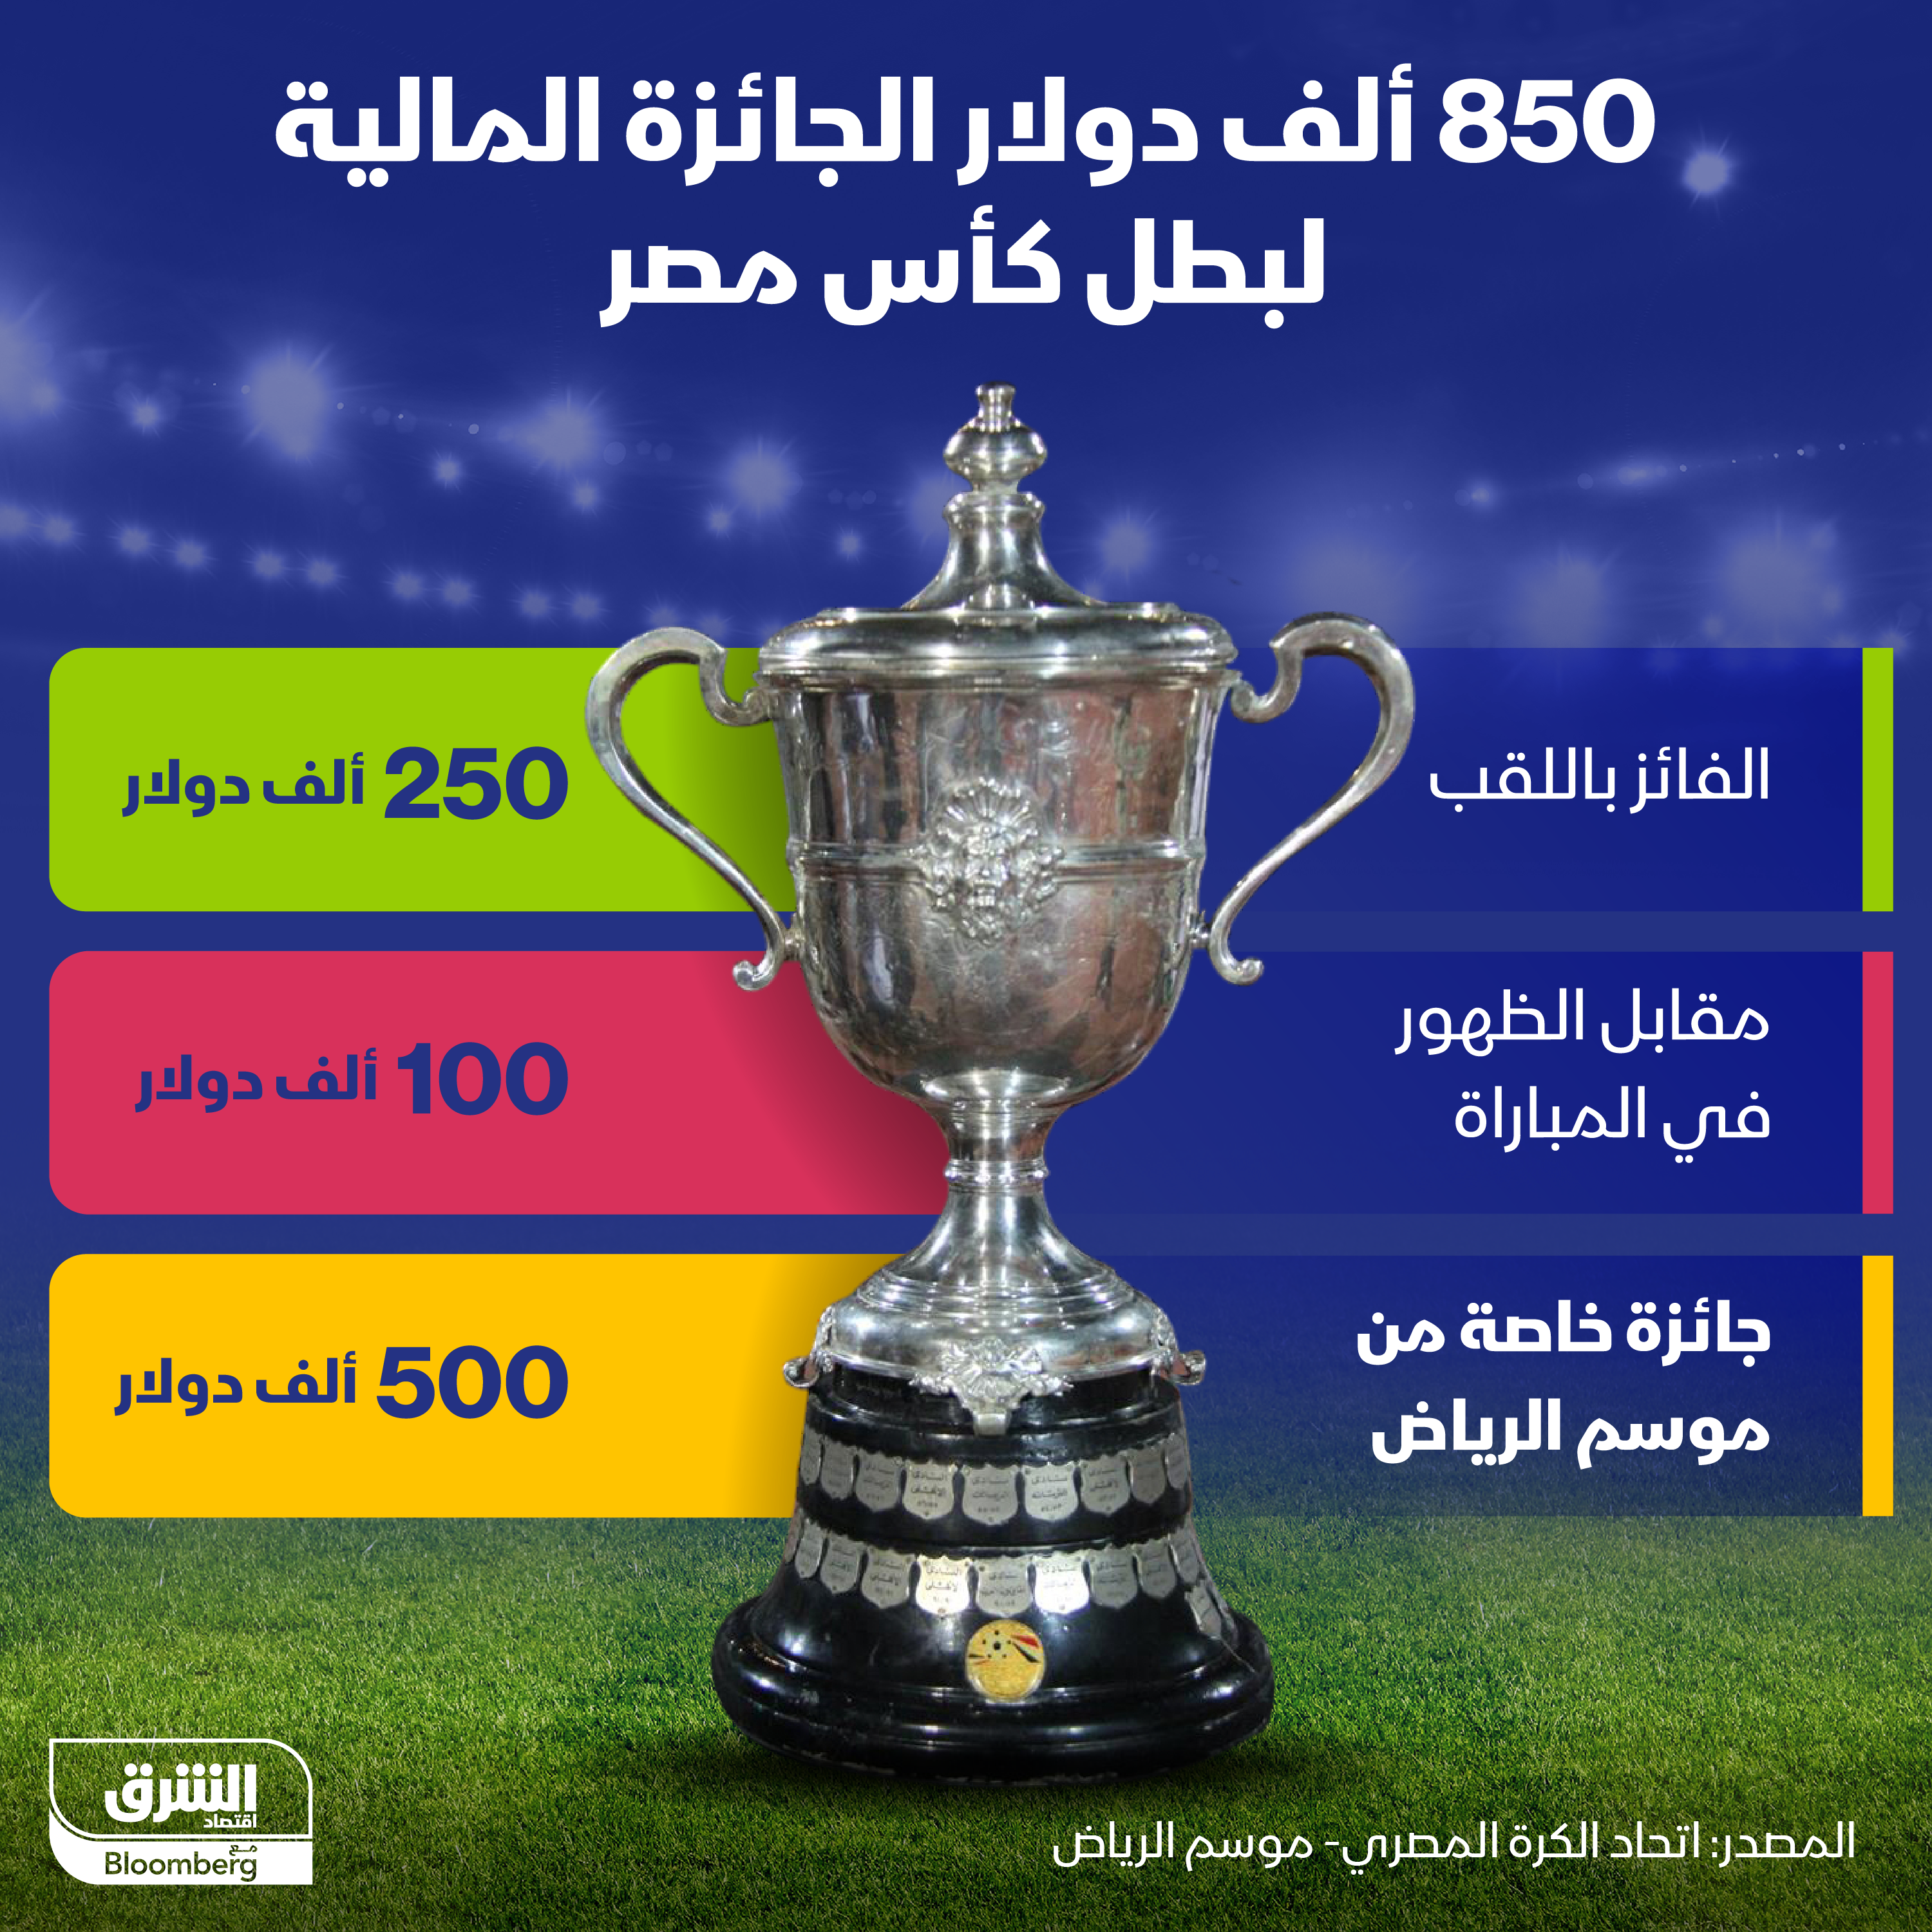 جوائز بطولة كأس مصر المقامة في الرياض في 8 مارس المقبل